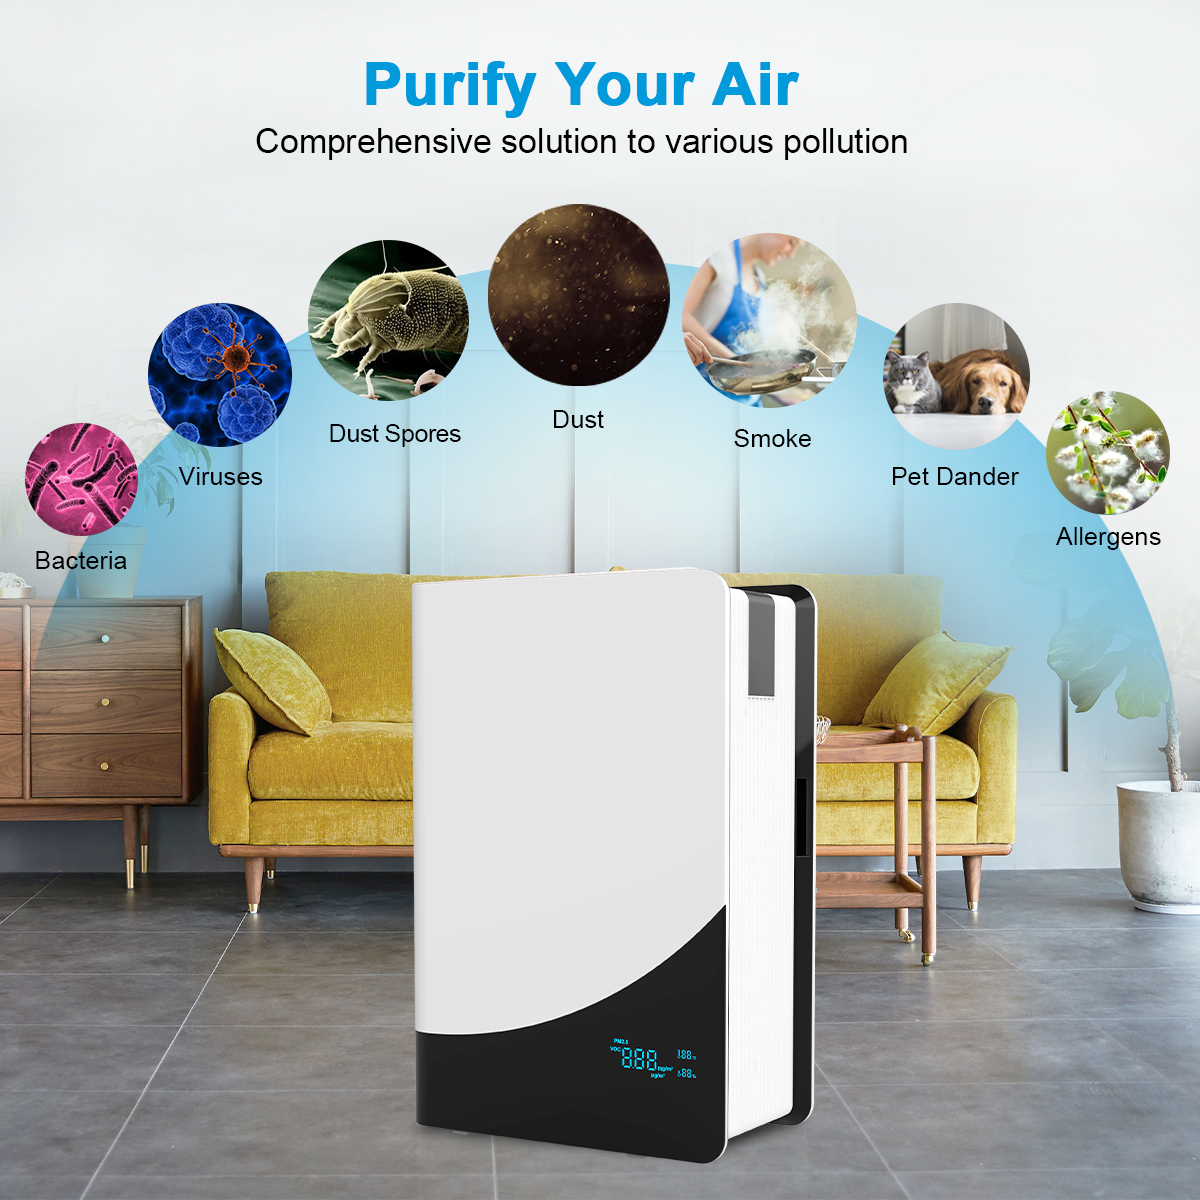 Fabrycznie filtrujący hepa domowy oczyszczacz powietrza